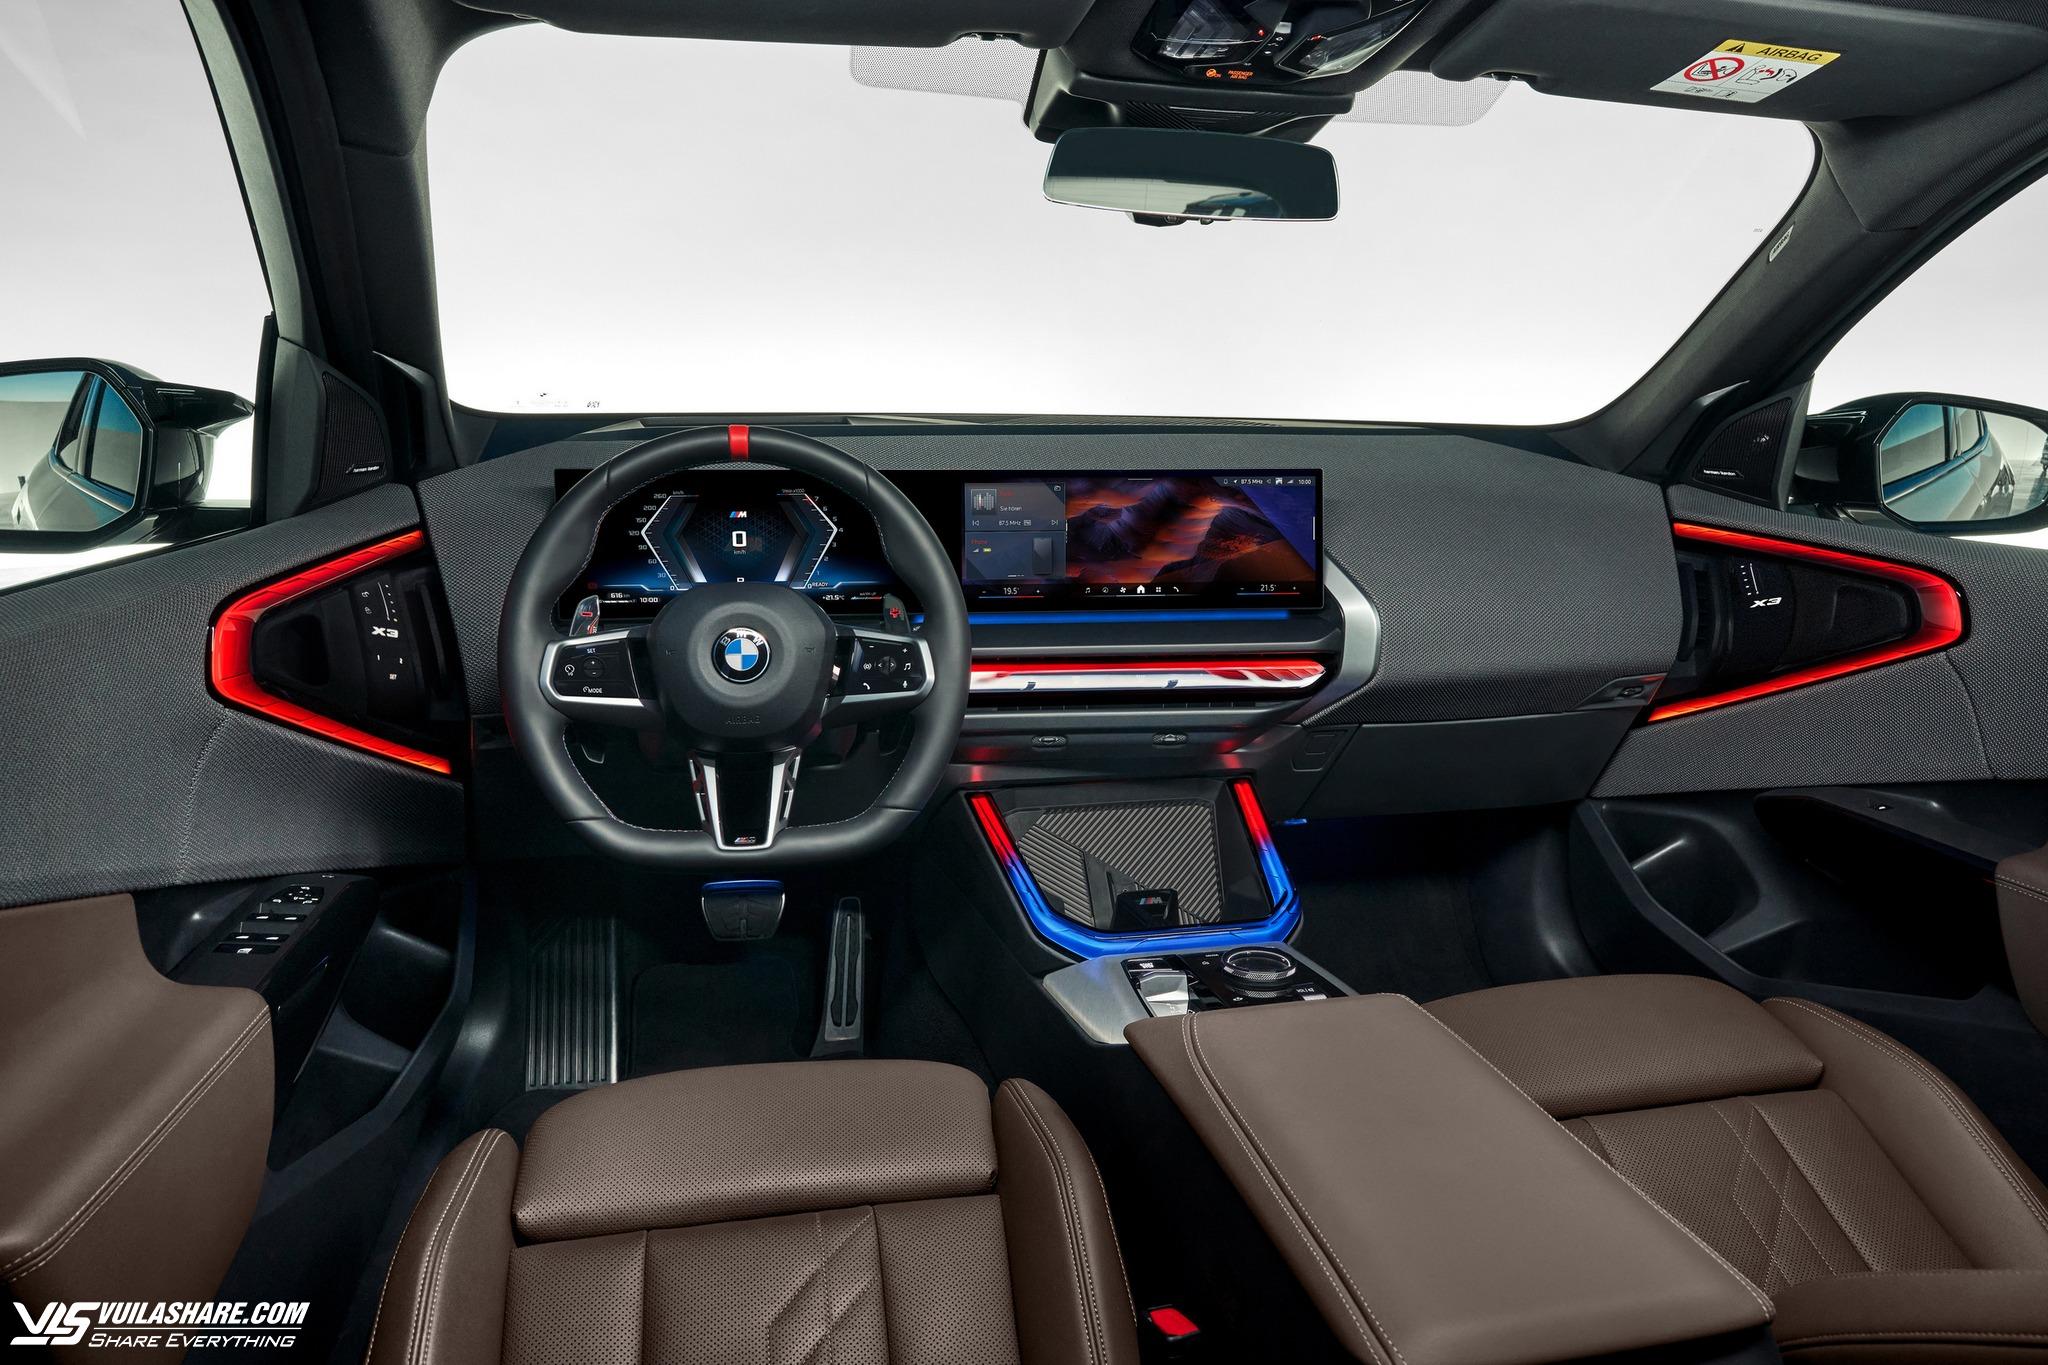 BMW X3 2025 lột xác thiết kế, chờ ngày về Việt Nam- Ảnh 3.